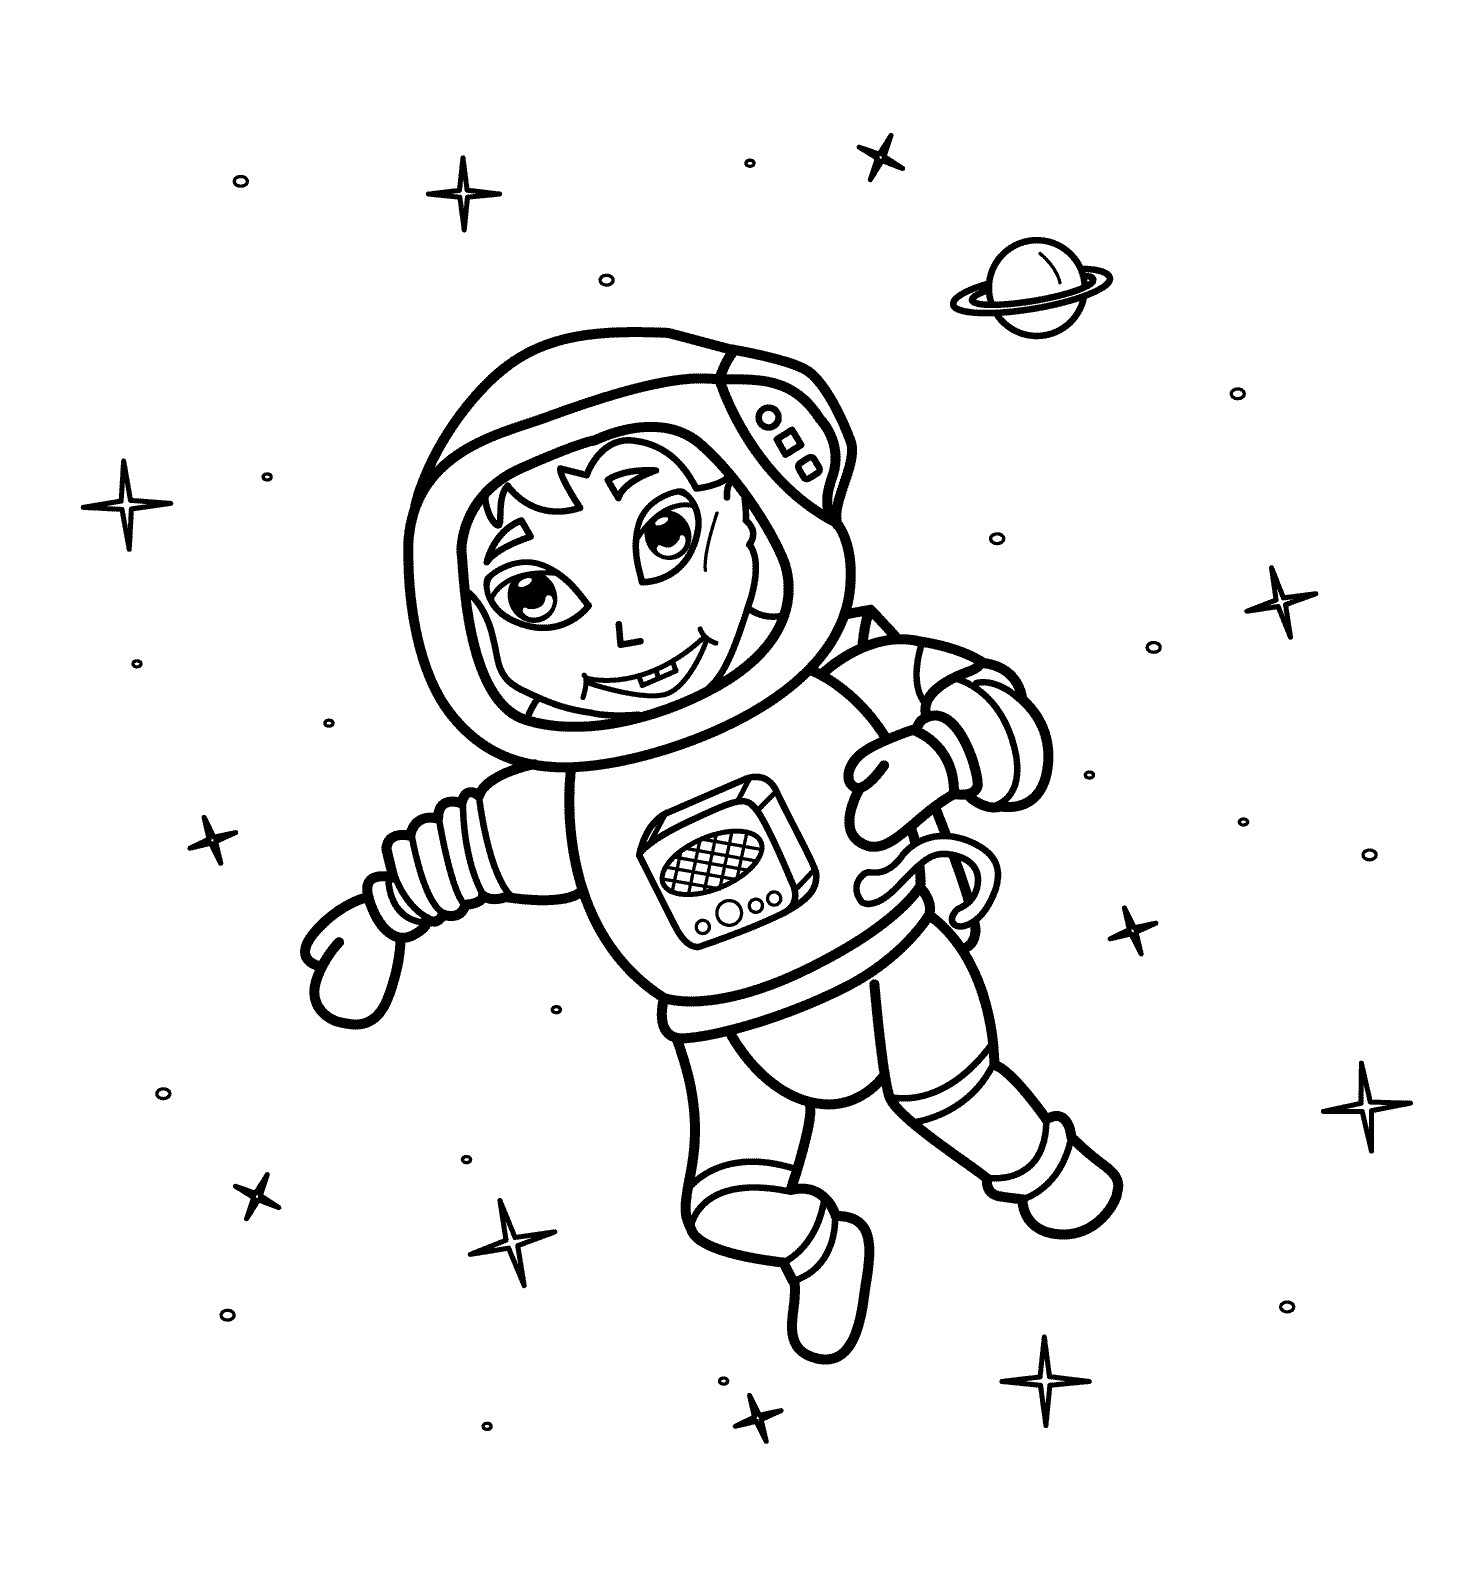 Картинки космос раскраска. Космонавт раскраска для детей. Космос раскраска для детей. Раскраска про космос и Космонавтов для детей. Космонавт для раскрашивания для детей.